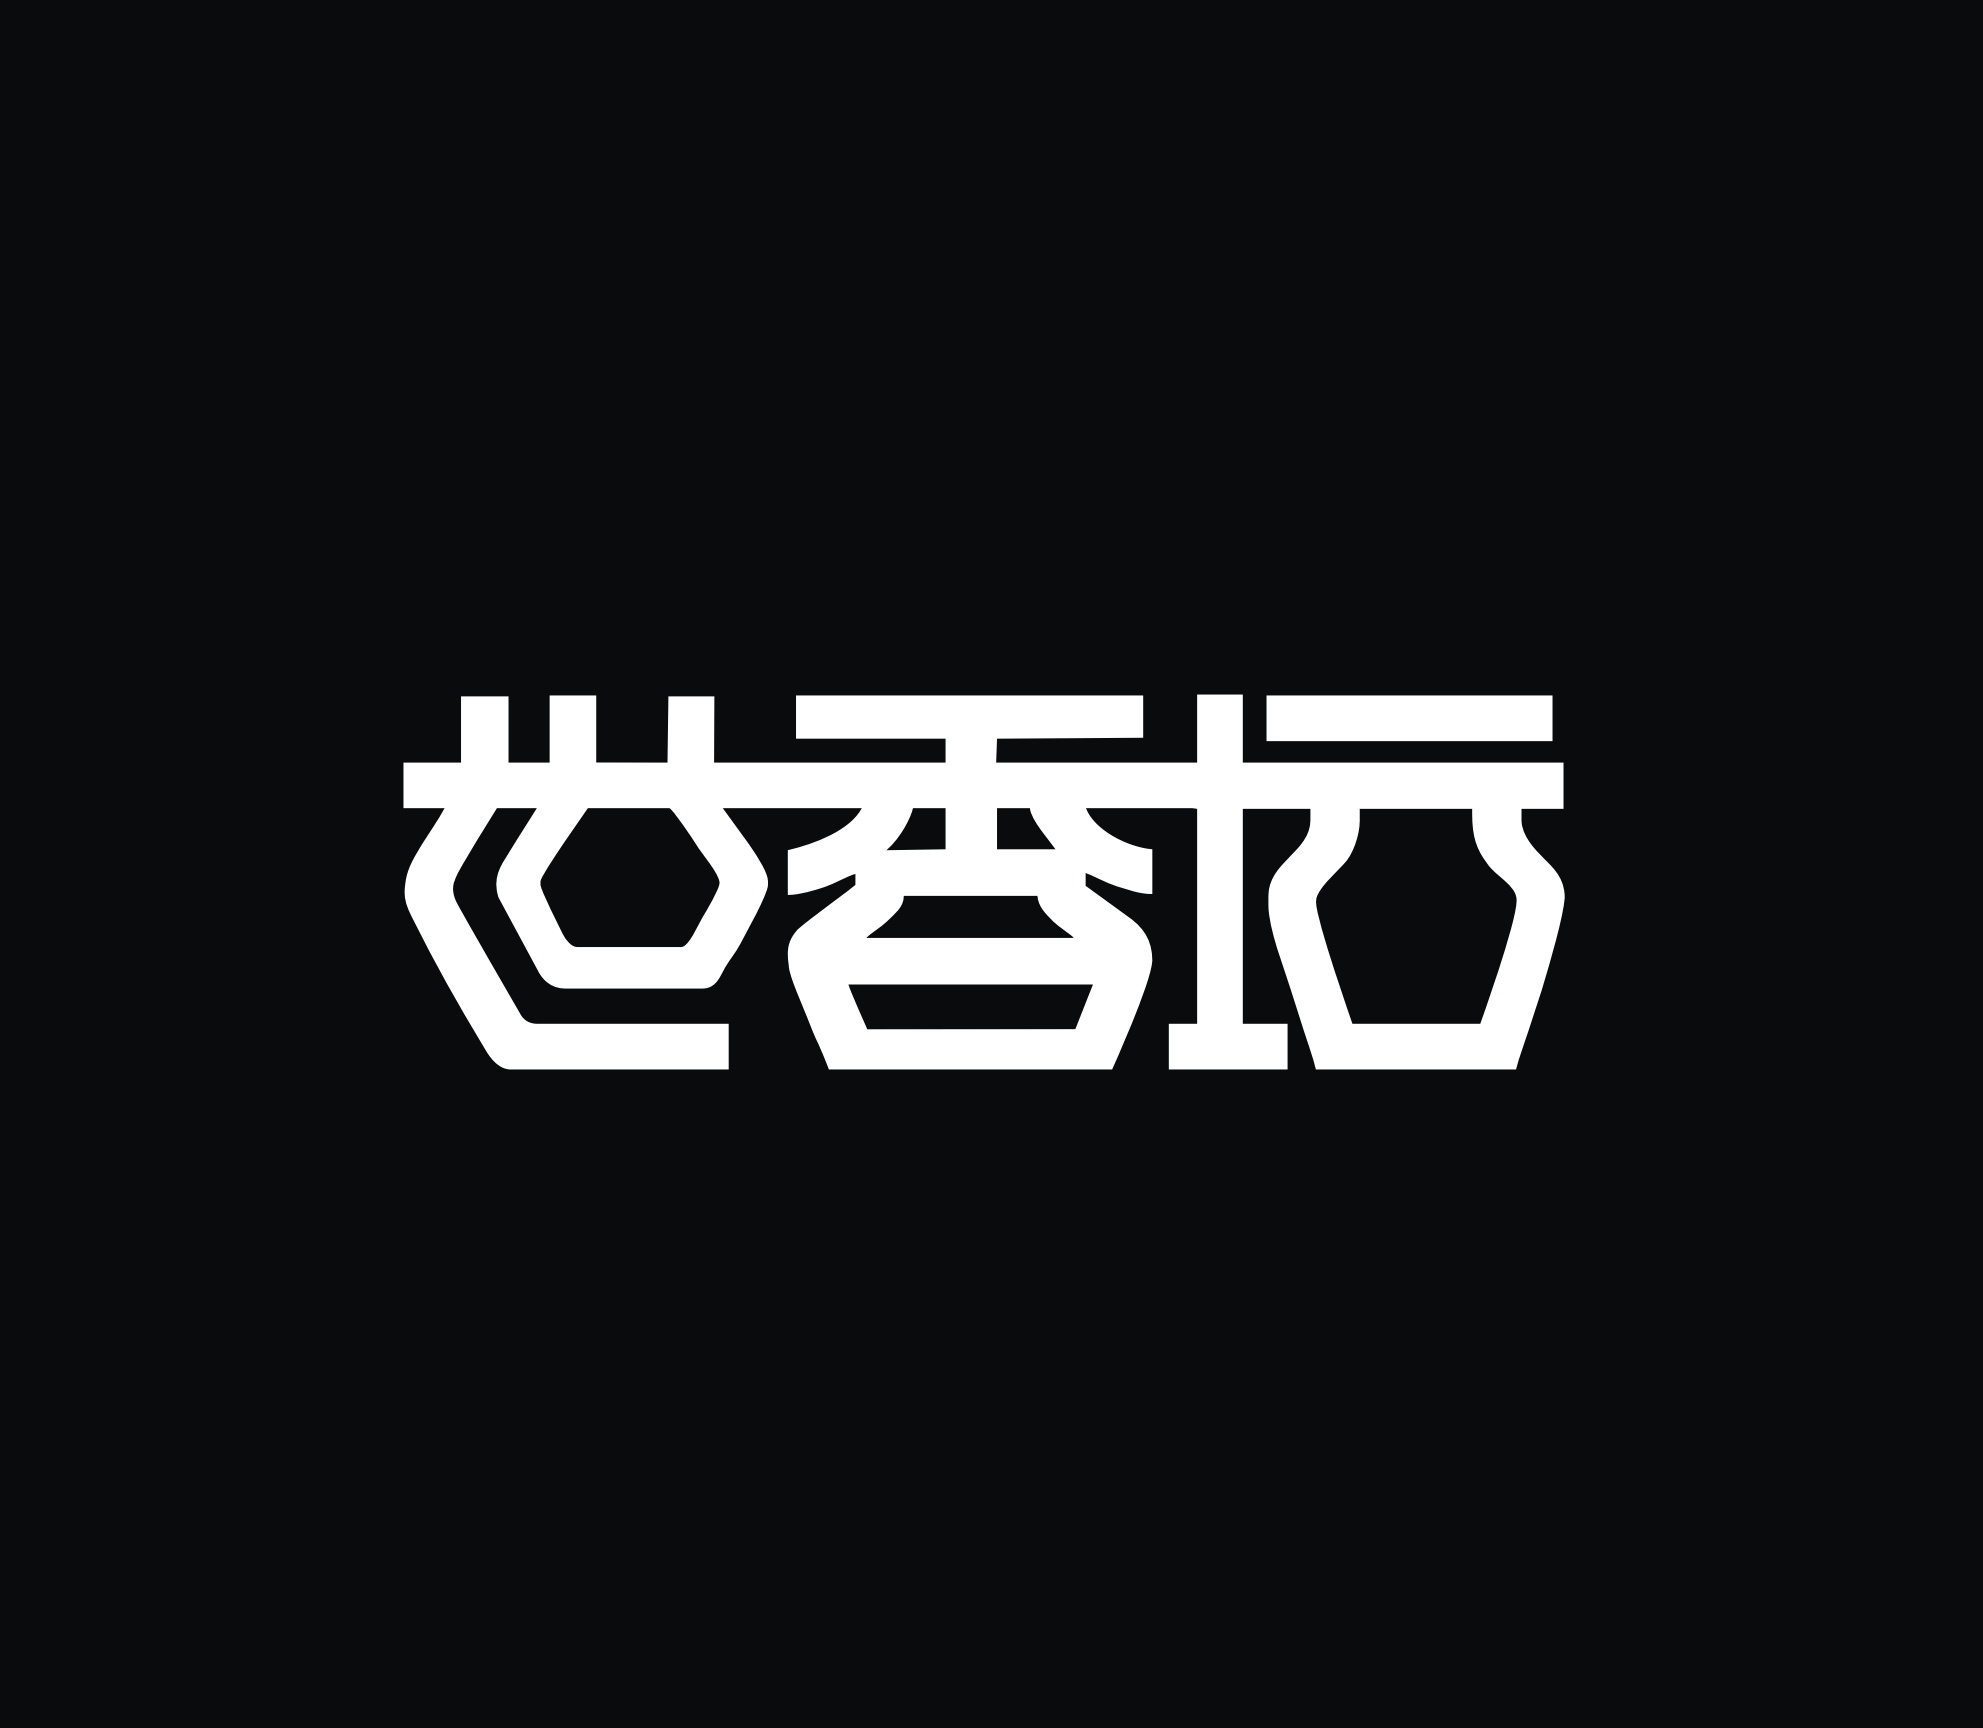 汉字logo设计